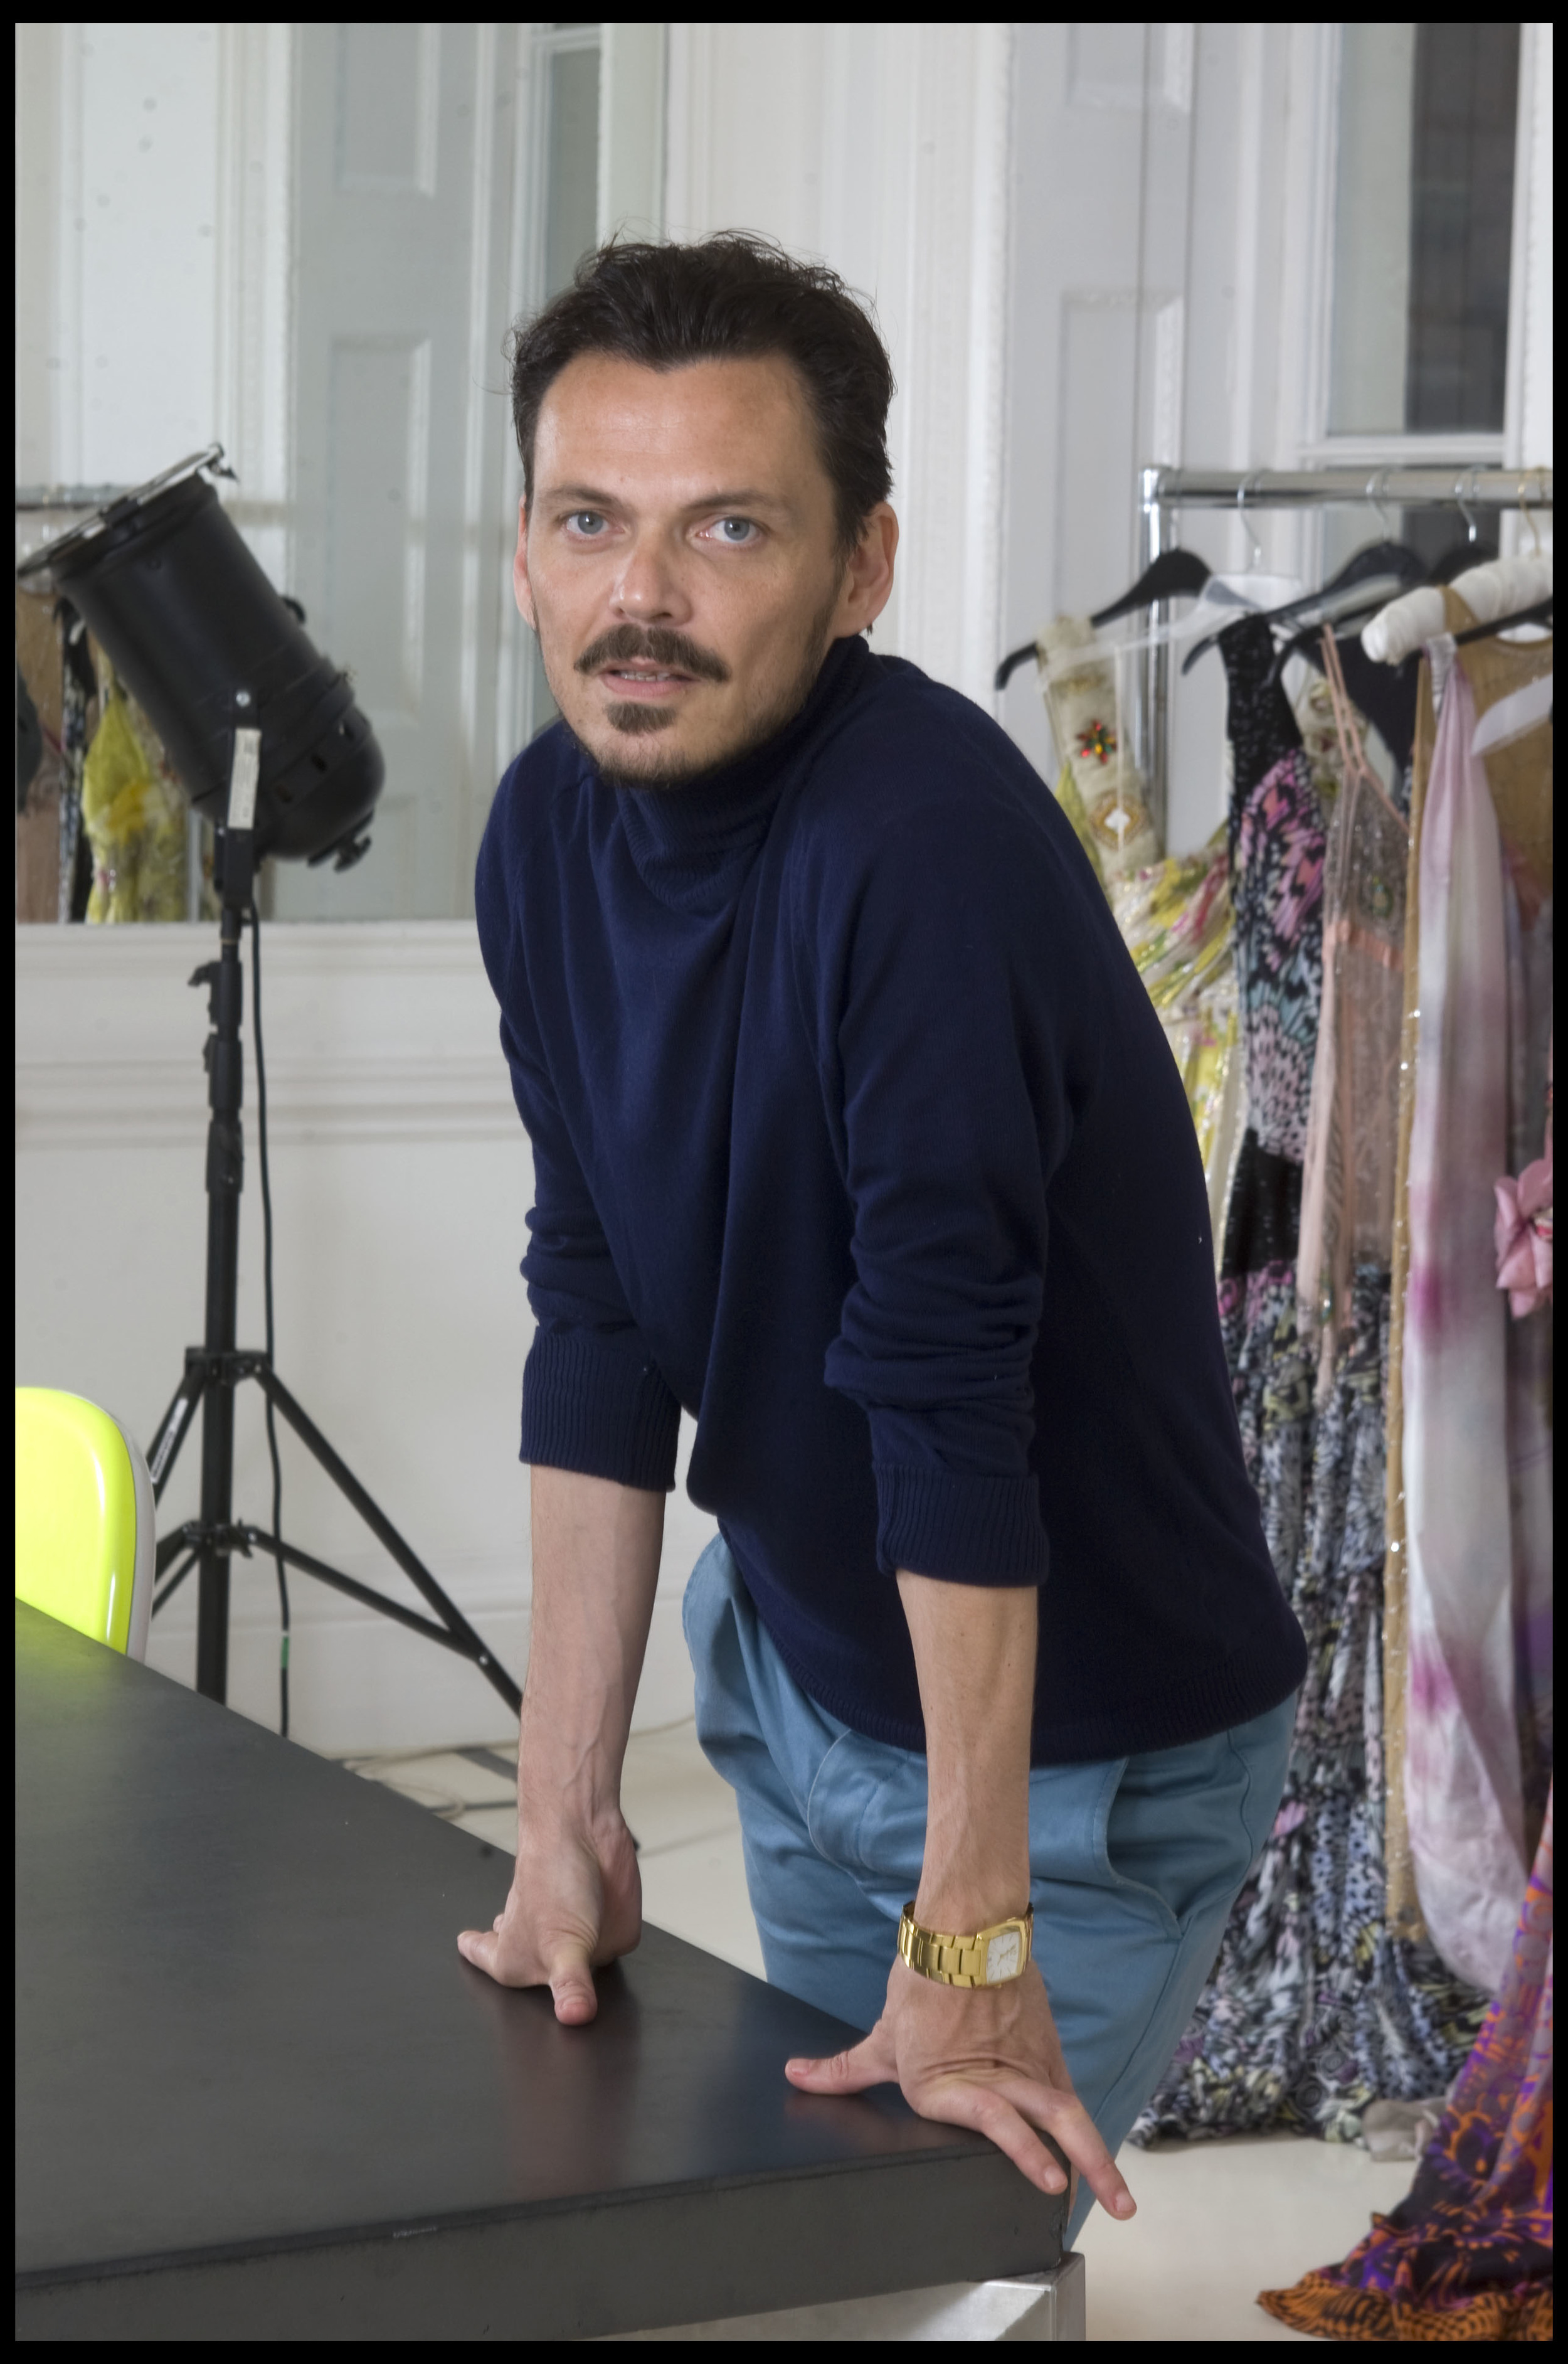 Matthew Williamson, fashion designer